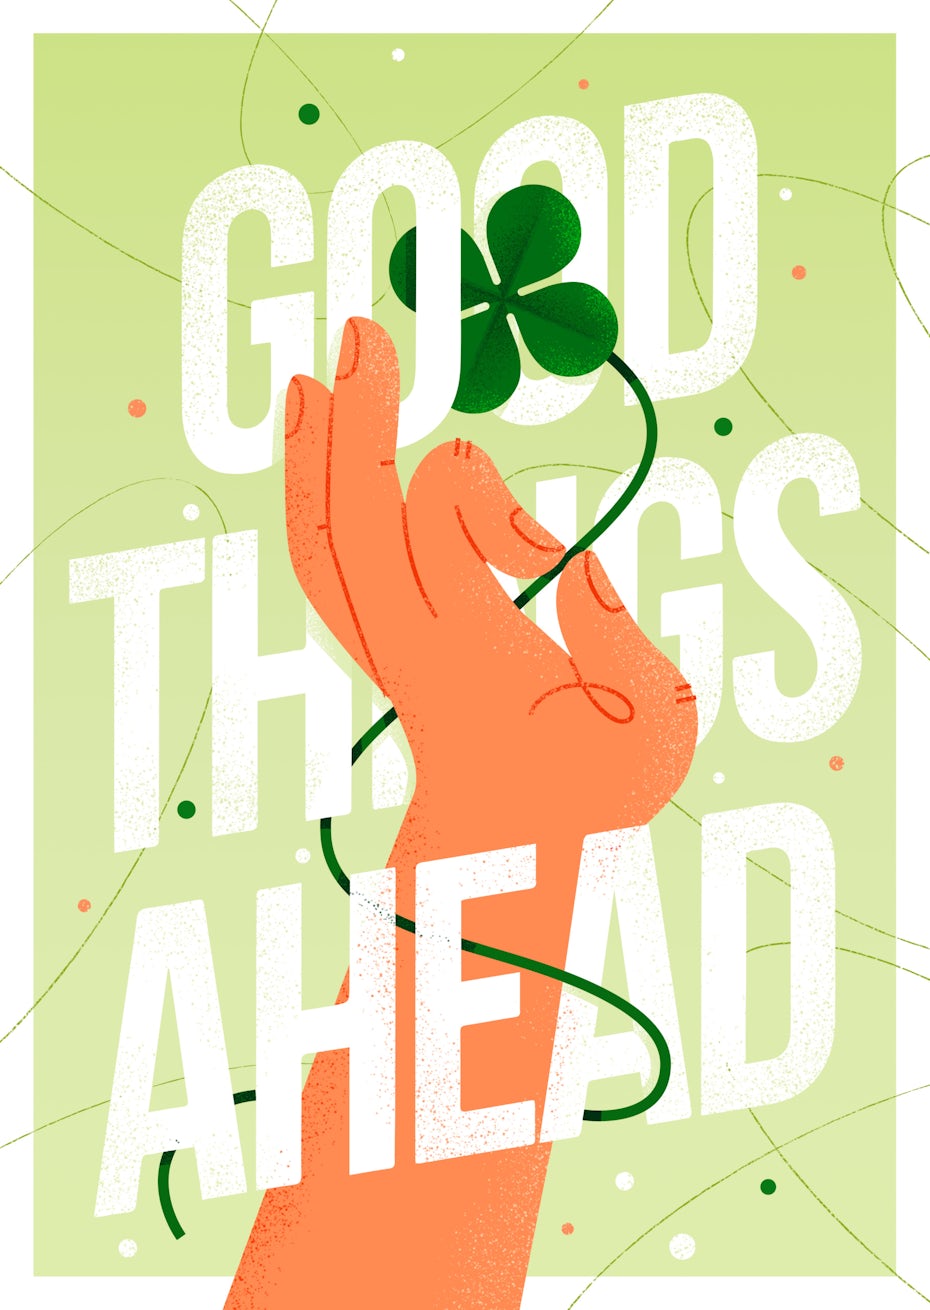 Un de nos posters motivants de 2020 créés par nos designers freelance